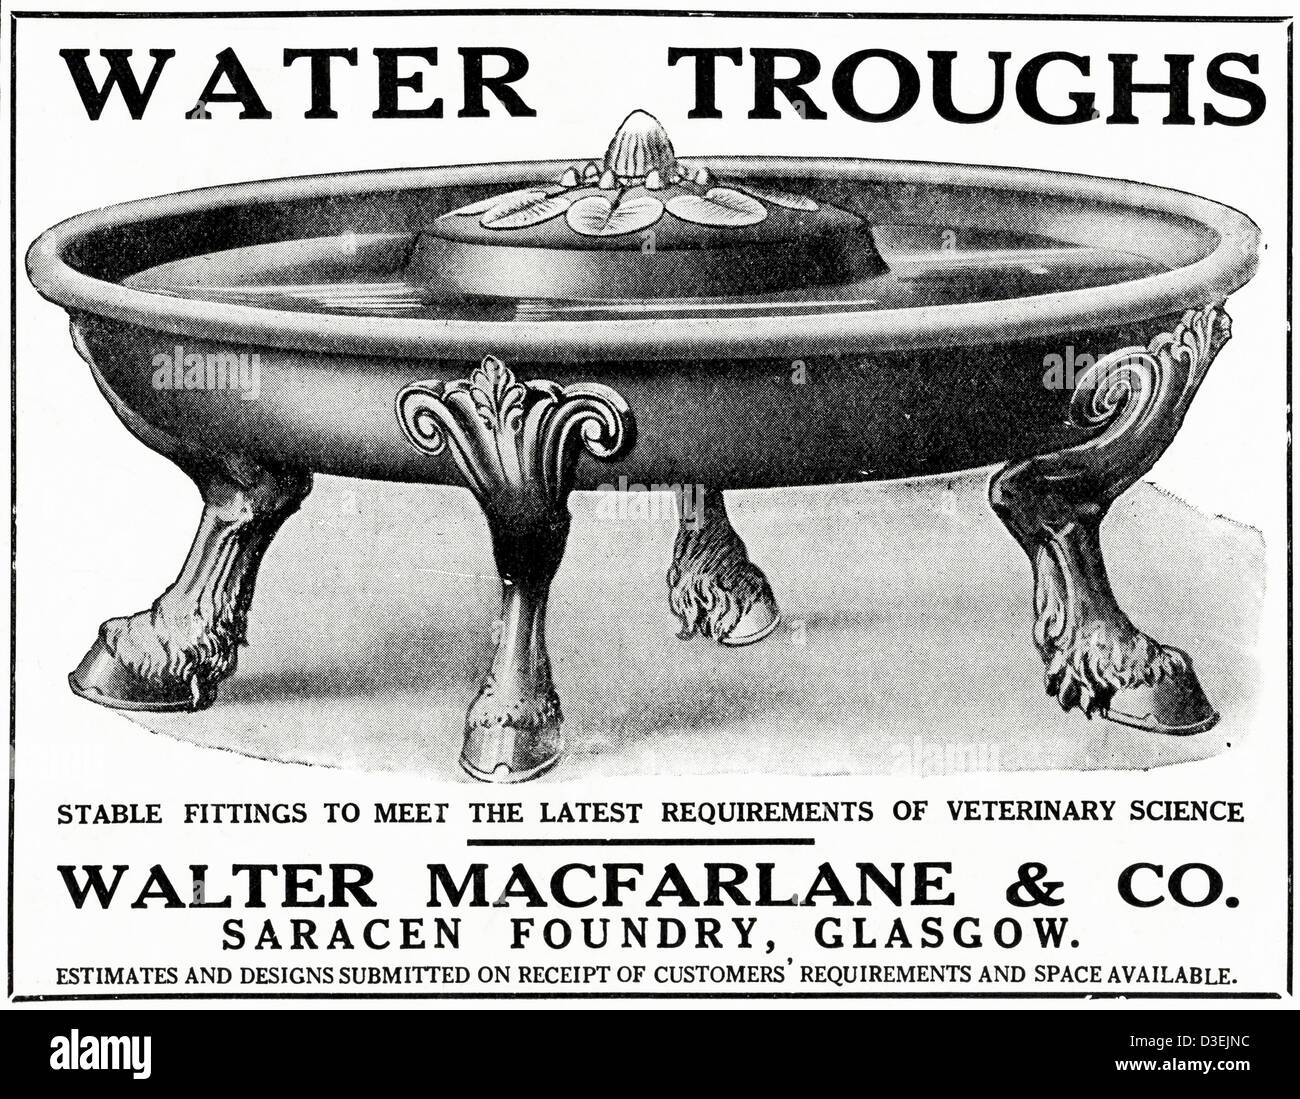 Originale di 1920s vintage stampa pubblicitaria da English Country Gentleman's pubblicità sui giornali stabile di acqua trogoli di Walter Macfarlane & Co di fonderia saracena Glasgow Foto Stock